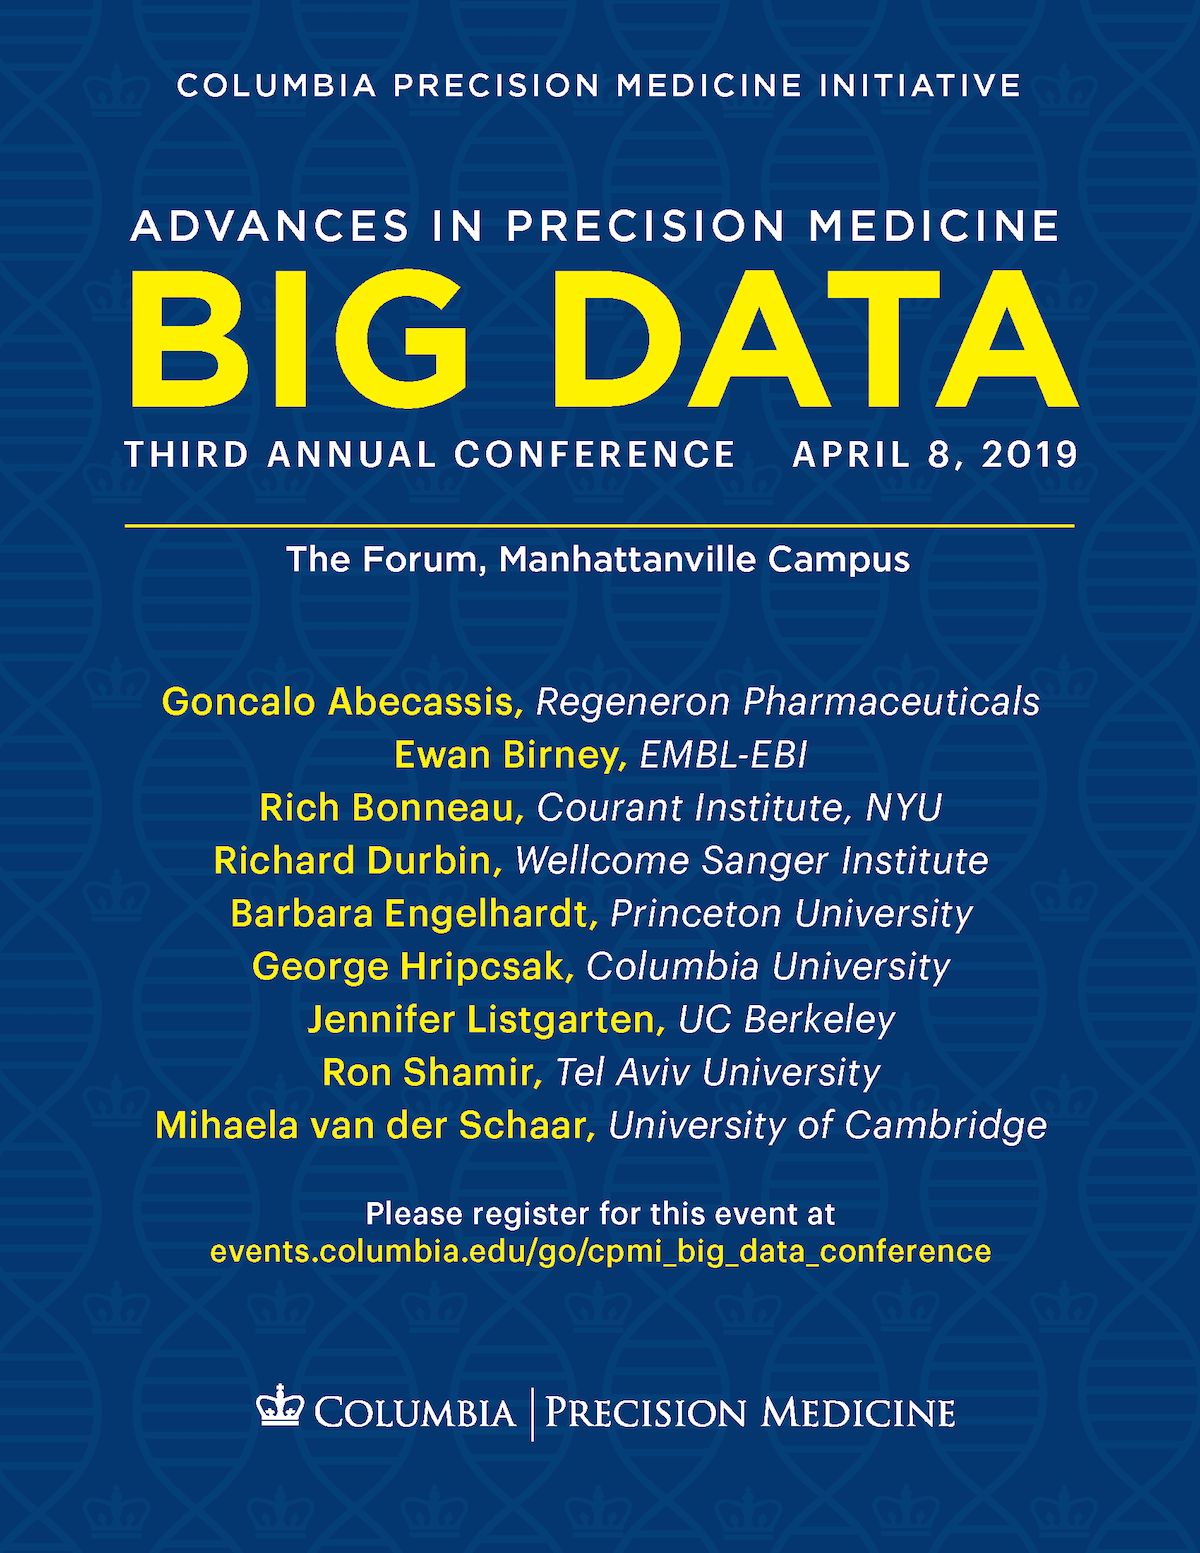 Columbia Precision Medicine Initiative Conference - Big Data